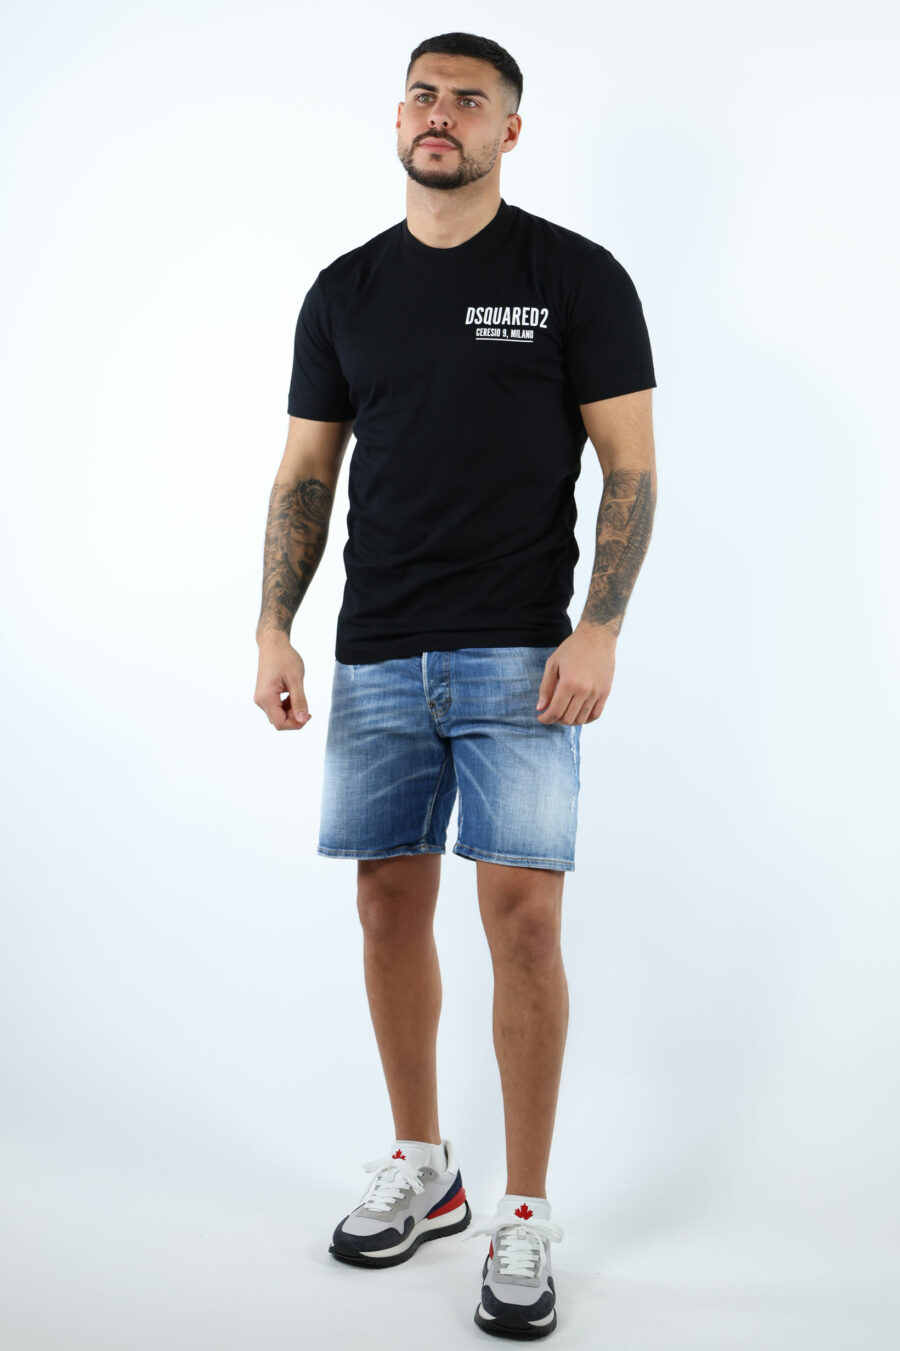 Schwarzes T-Shirt mit Minilogue "ceresio 9, milano" - 106876